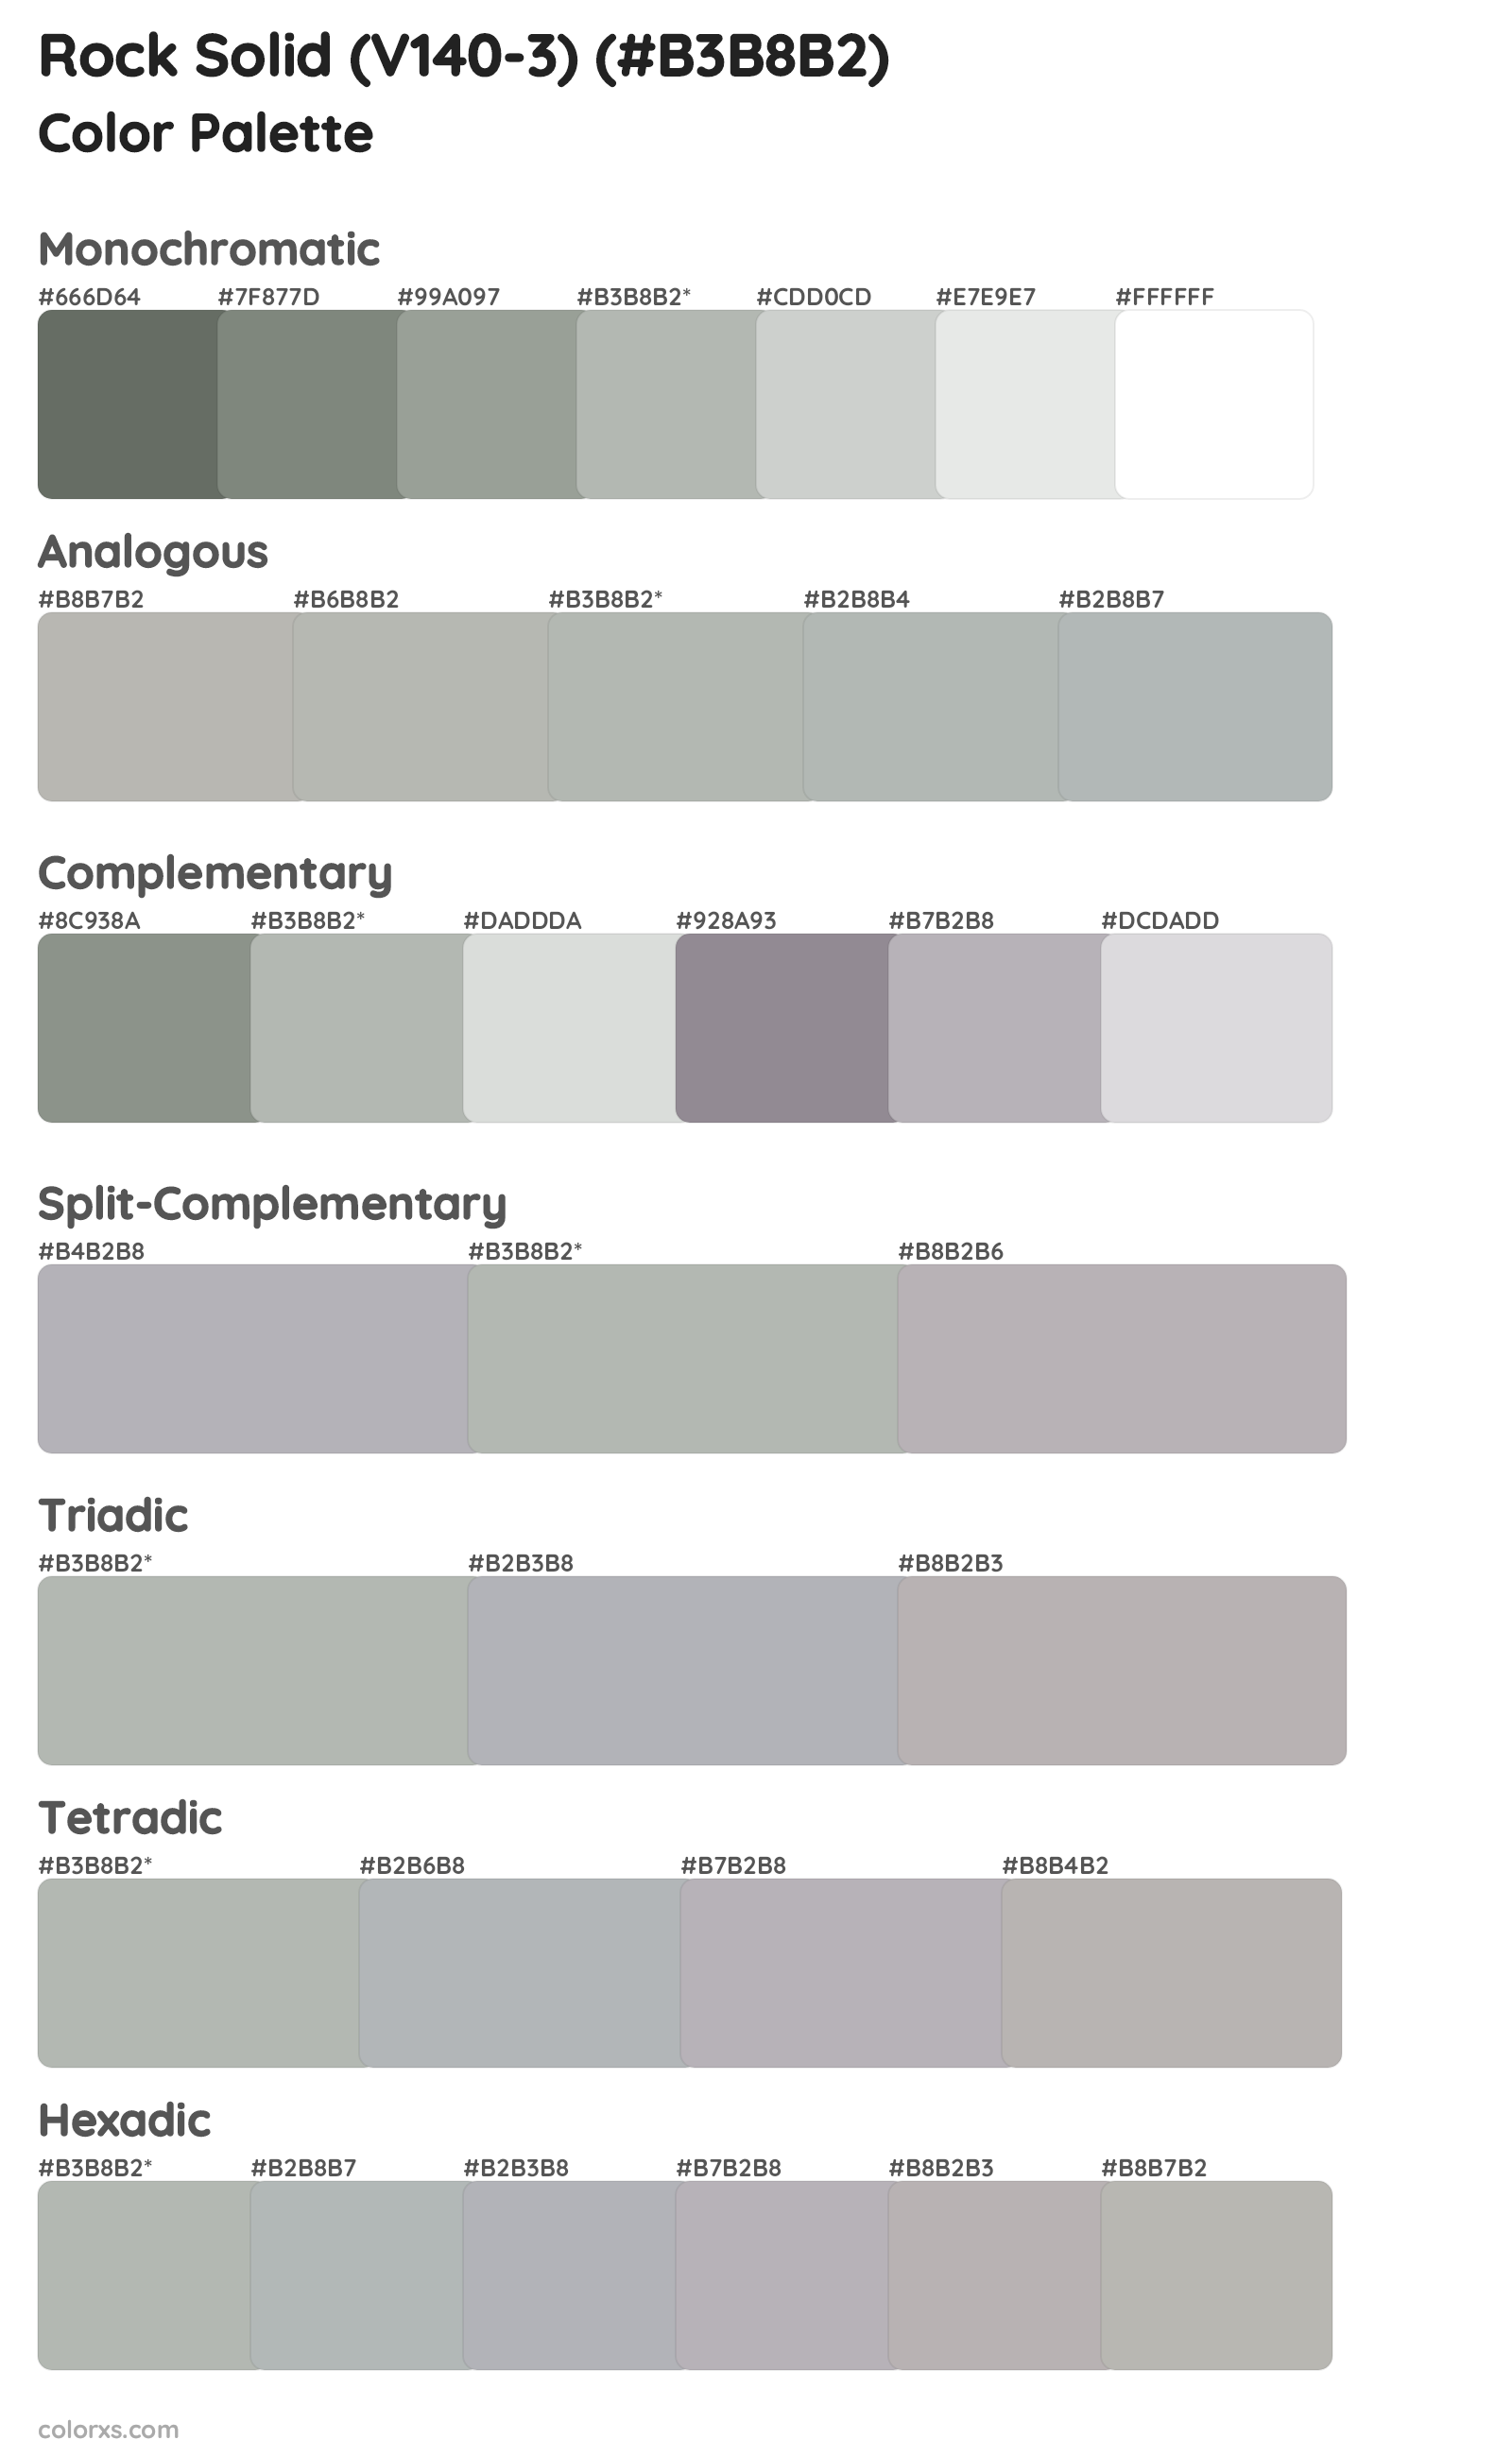 Rock Solid (V140-3) Color Scheme Palettes